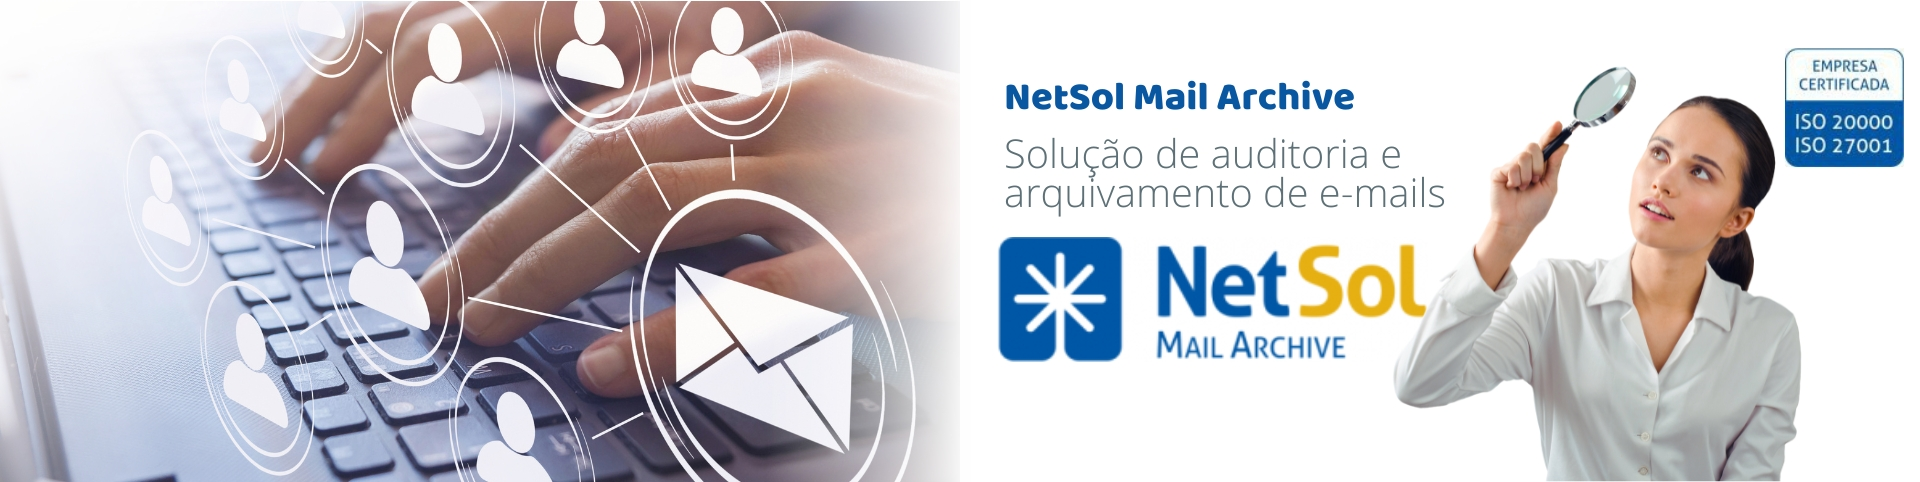 NetSol_MailArchive